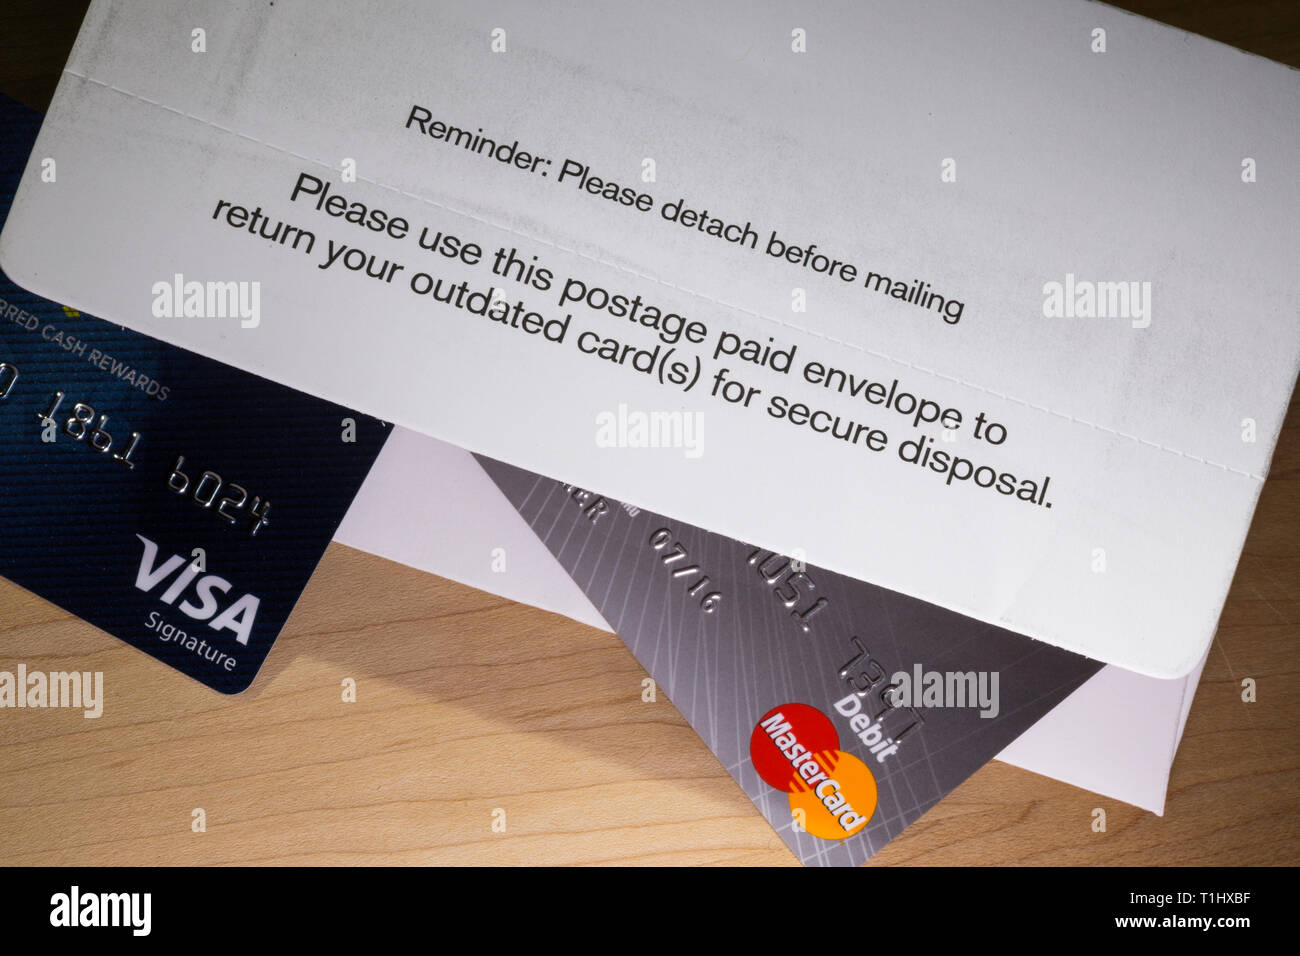 Porto bezahlt Umschlag ist für die sichere Entsorgung abgelaufener Kreditkarten, USA Stockfoto